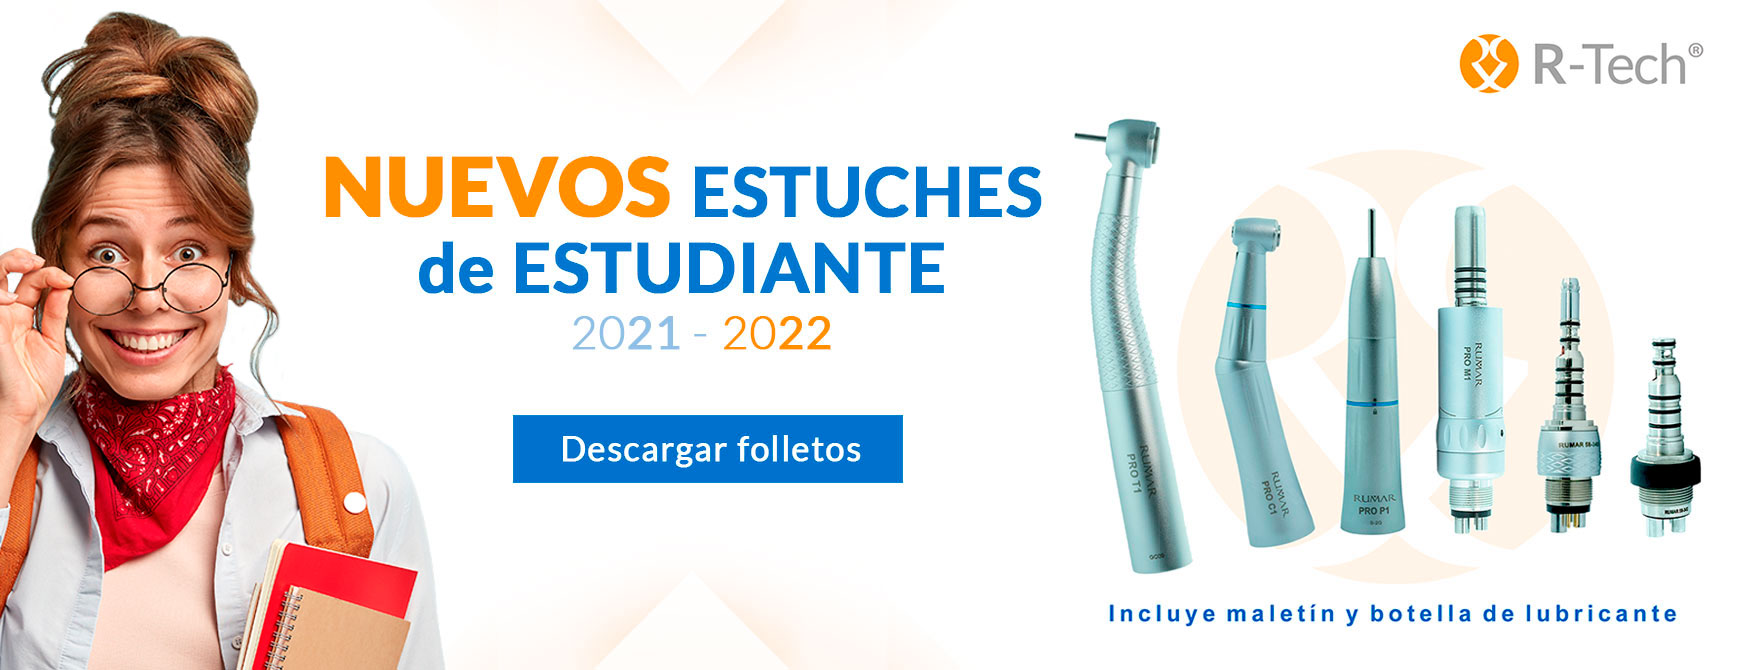 estuches-estudiantes-2021-2022-sinmaletin-esp